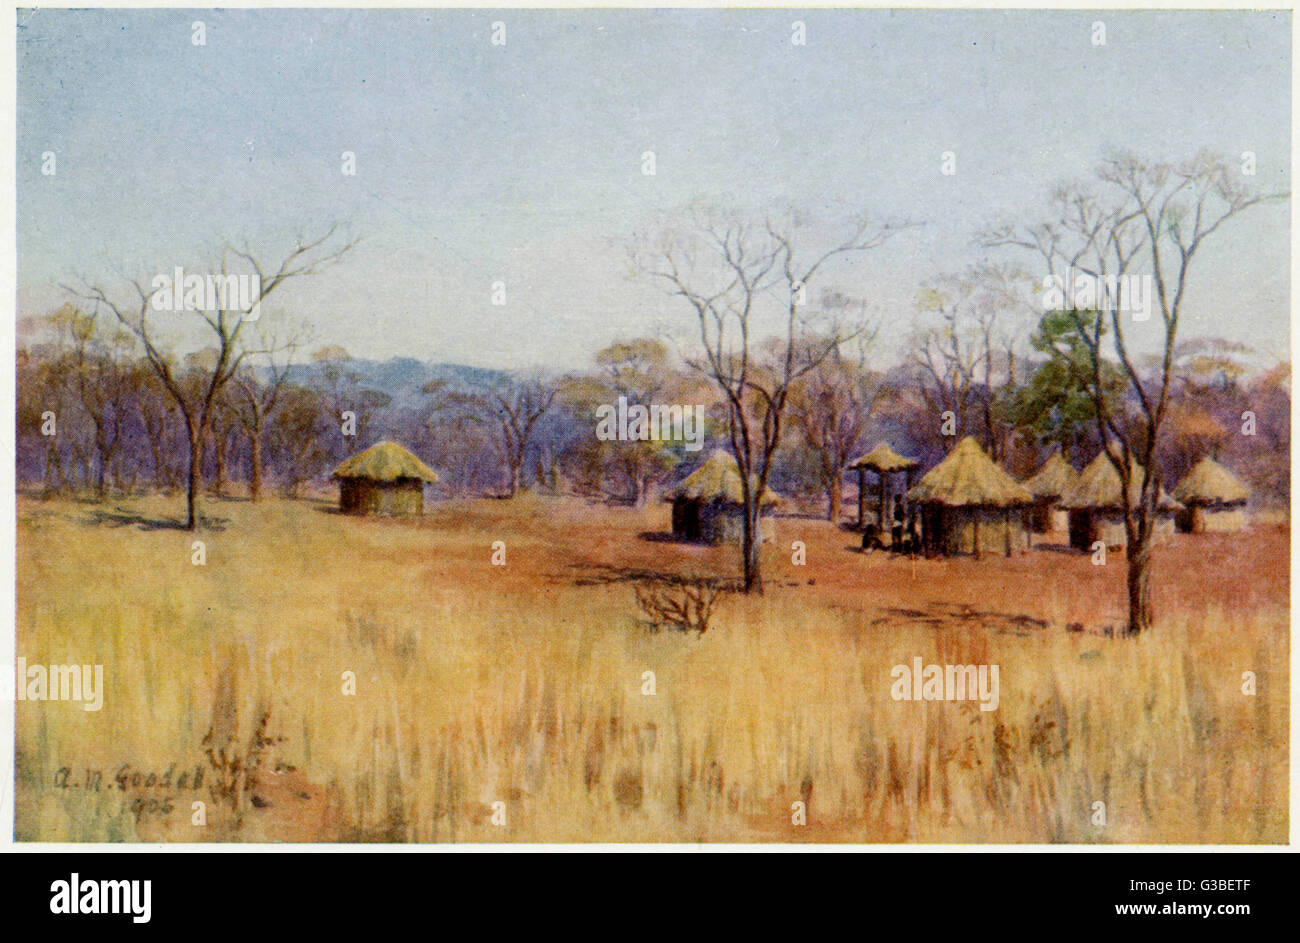 Kaffir huts on an African  plain         Date: 1905 Stock Photo